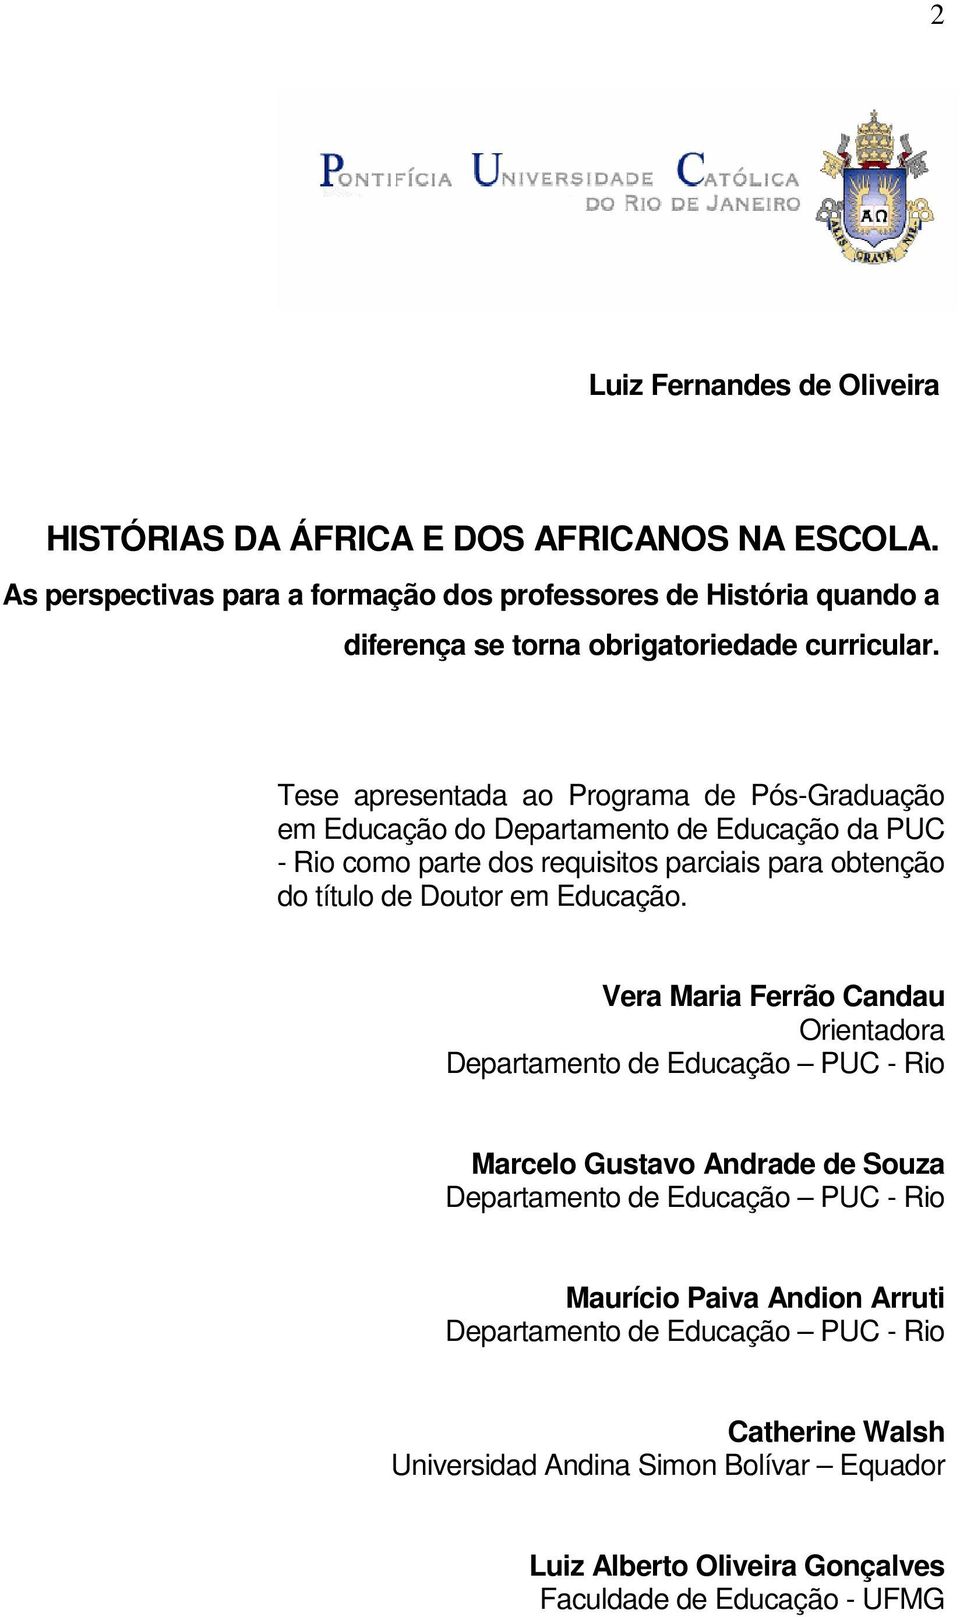 Tese apresentada ao Programa de Pós-Graduação em Educação do Departamento de Educação da PUC - Rio como parte dos requisitos parciais para obtenção do título de Doutor em